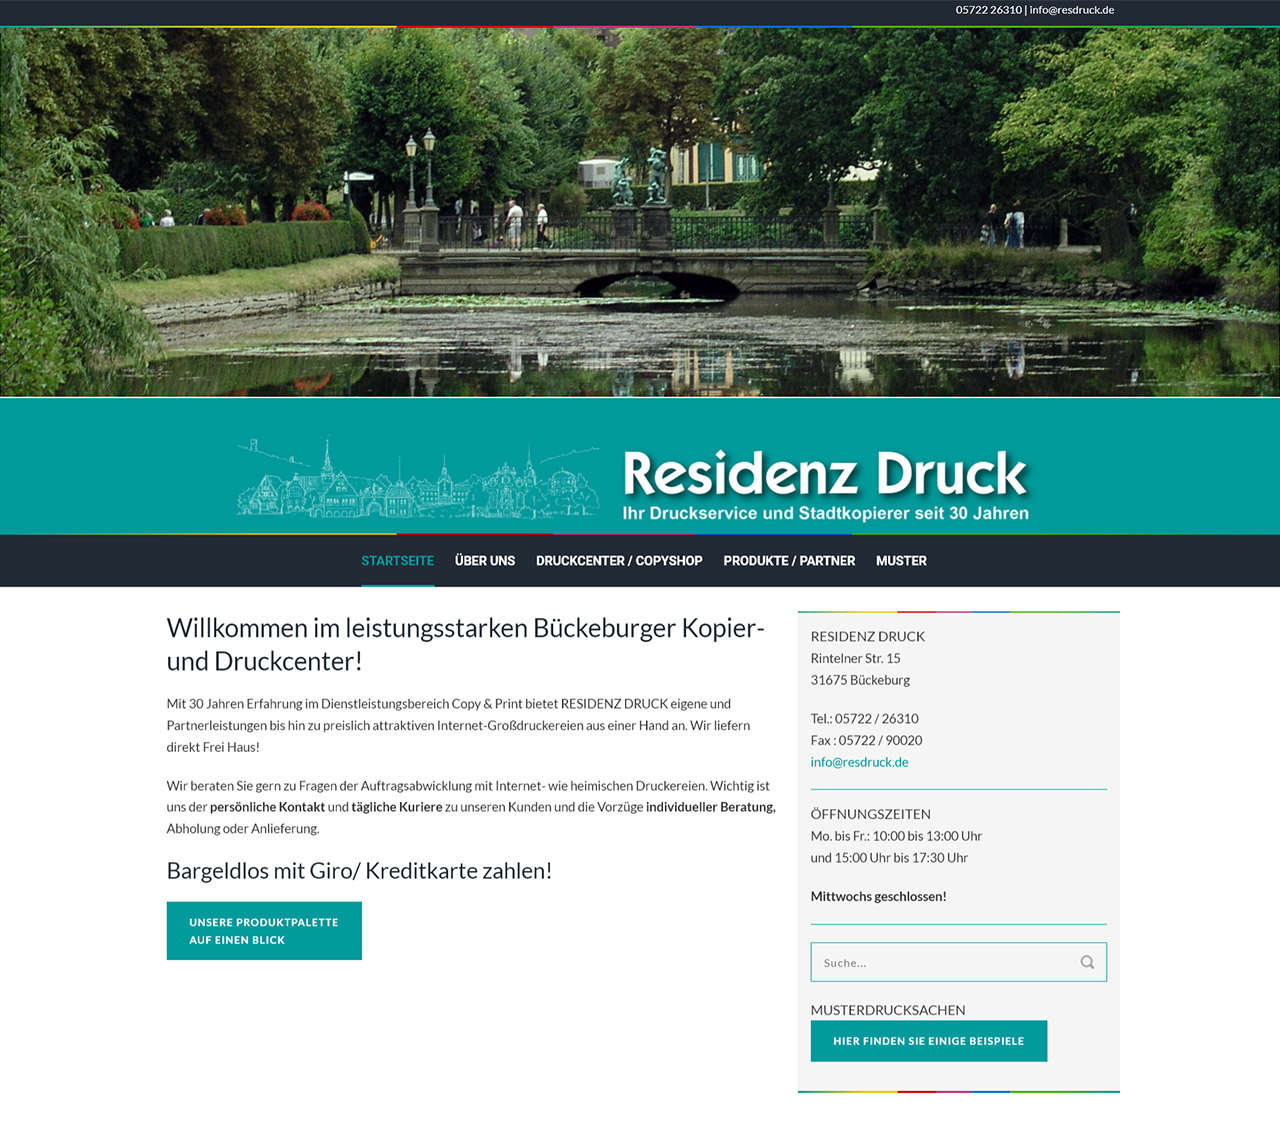 Residenz Druck - Ihr Druckservice und Stadtkopierer in Bückeburg